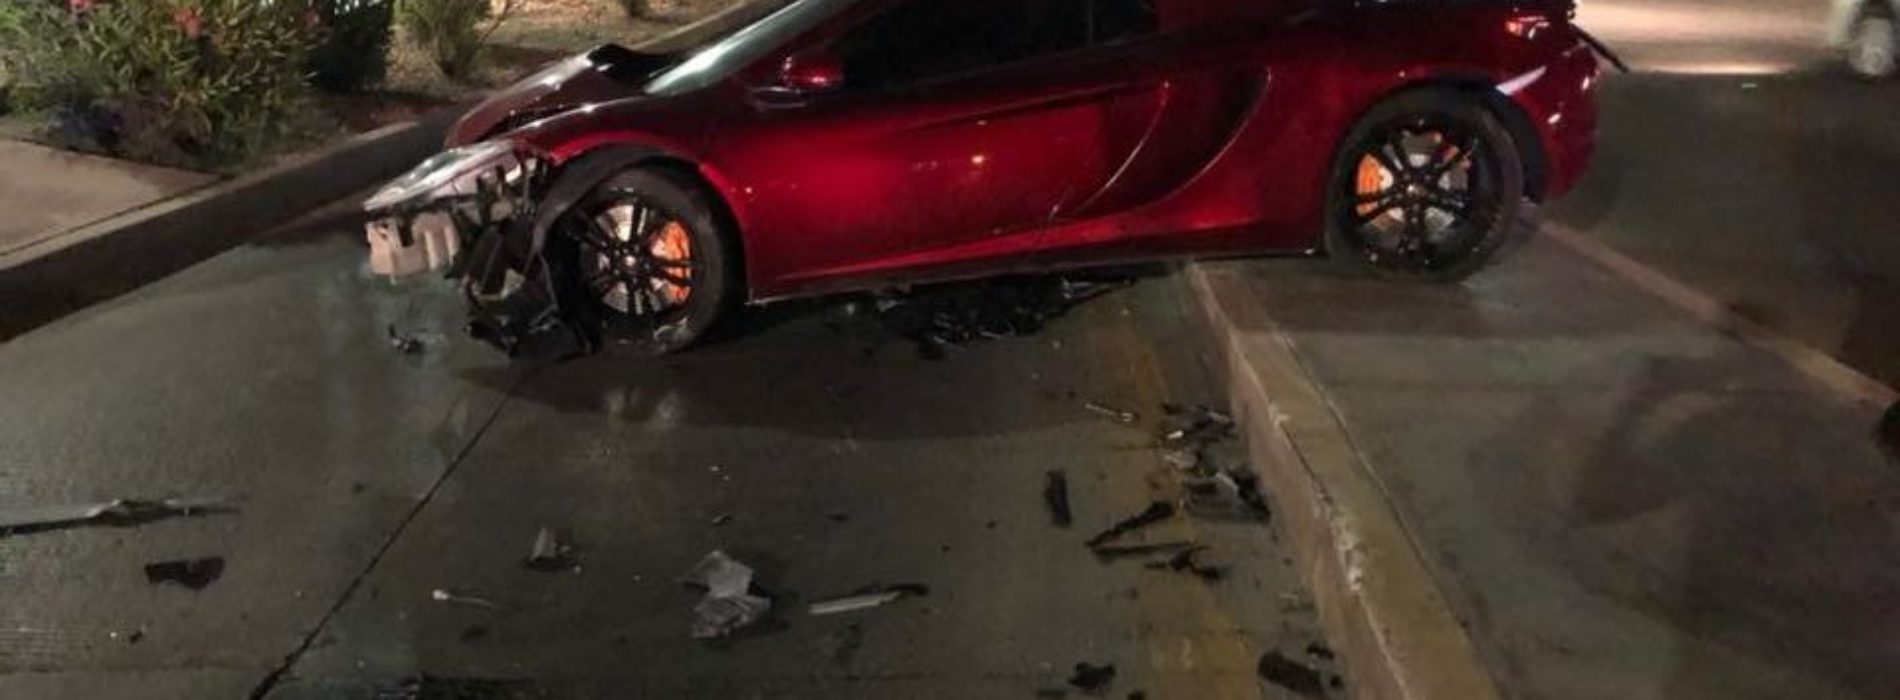 Hijo de ex alcalde de Chihuahua choca y abandona su auto de
5mdp